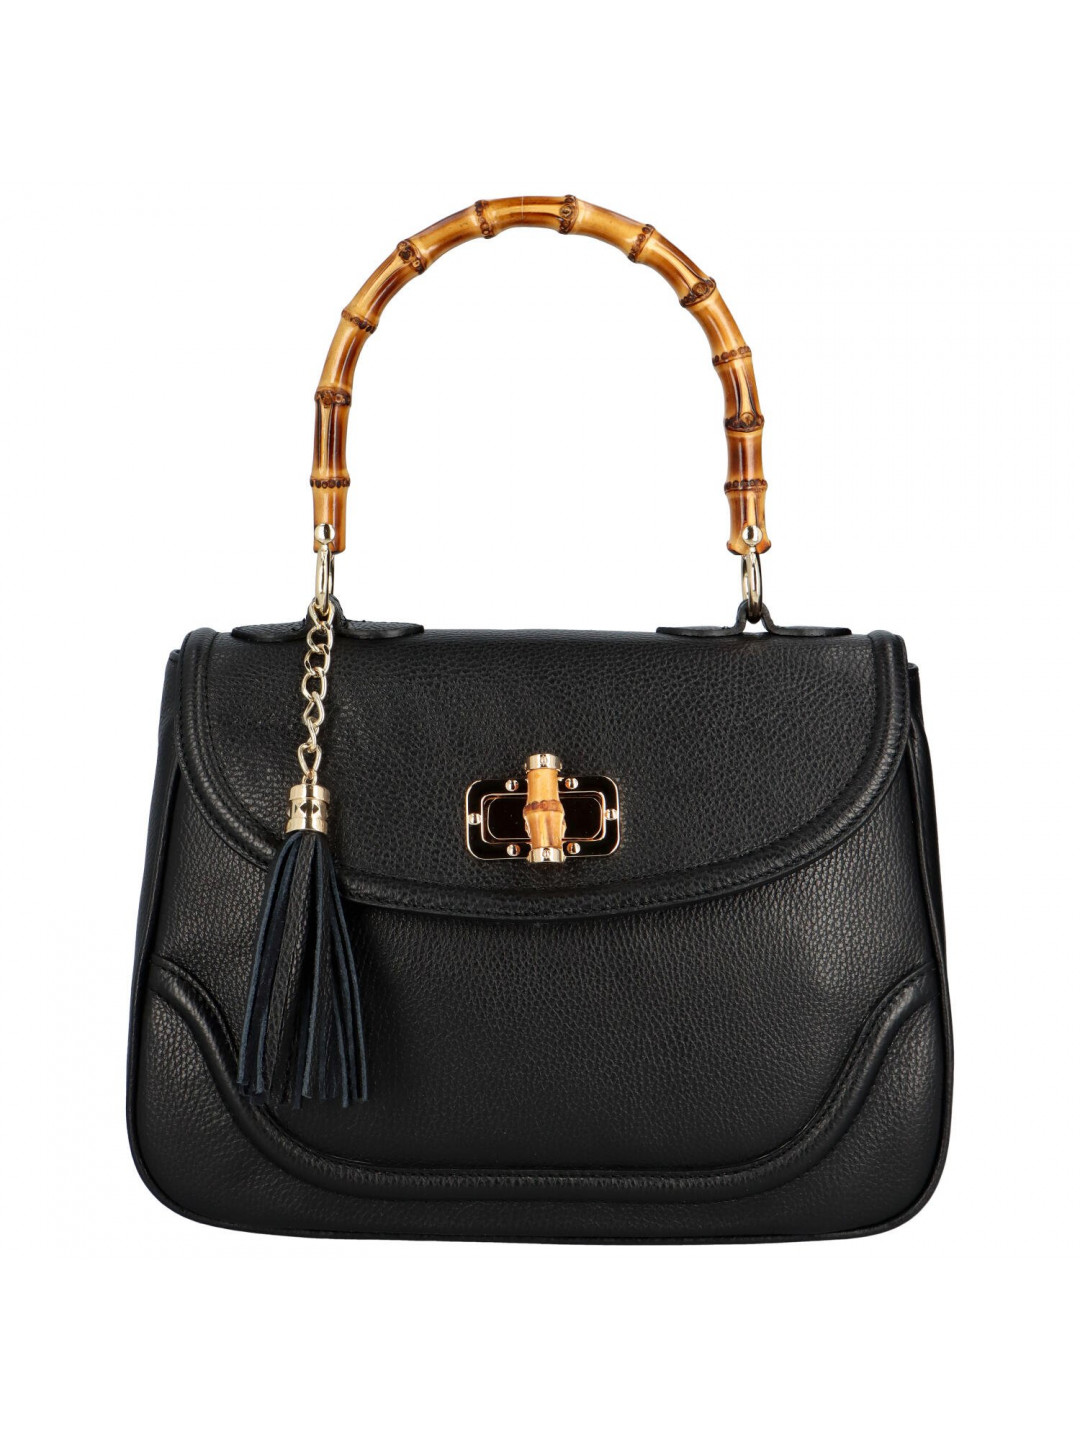 Luxusní dámská kožená kabelka Elenne černá